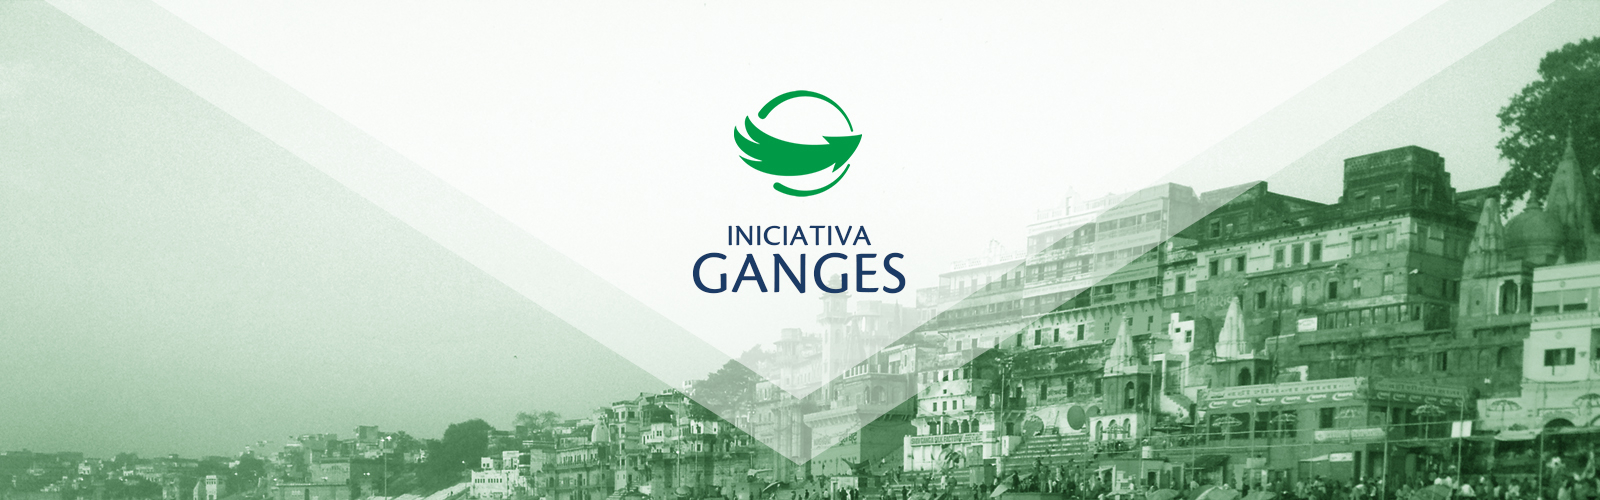 Iniciativa Ganges